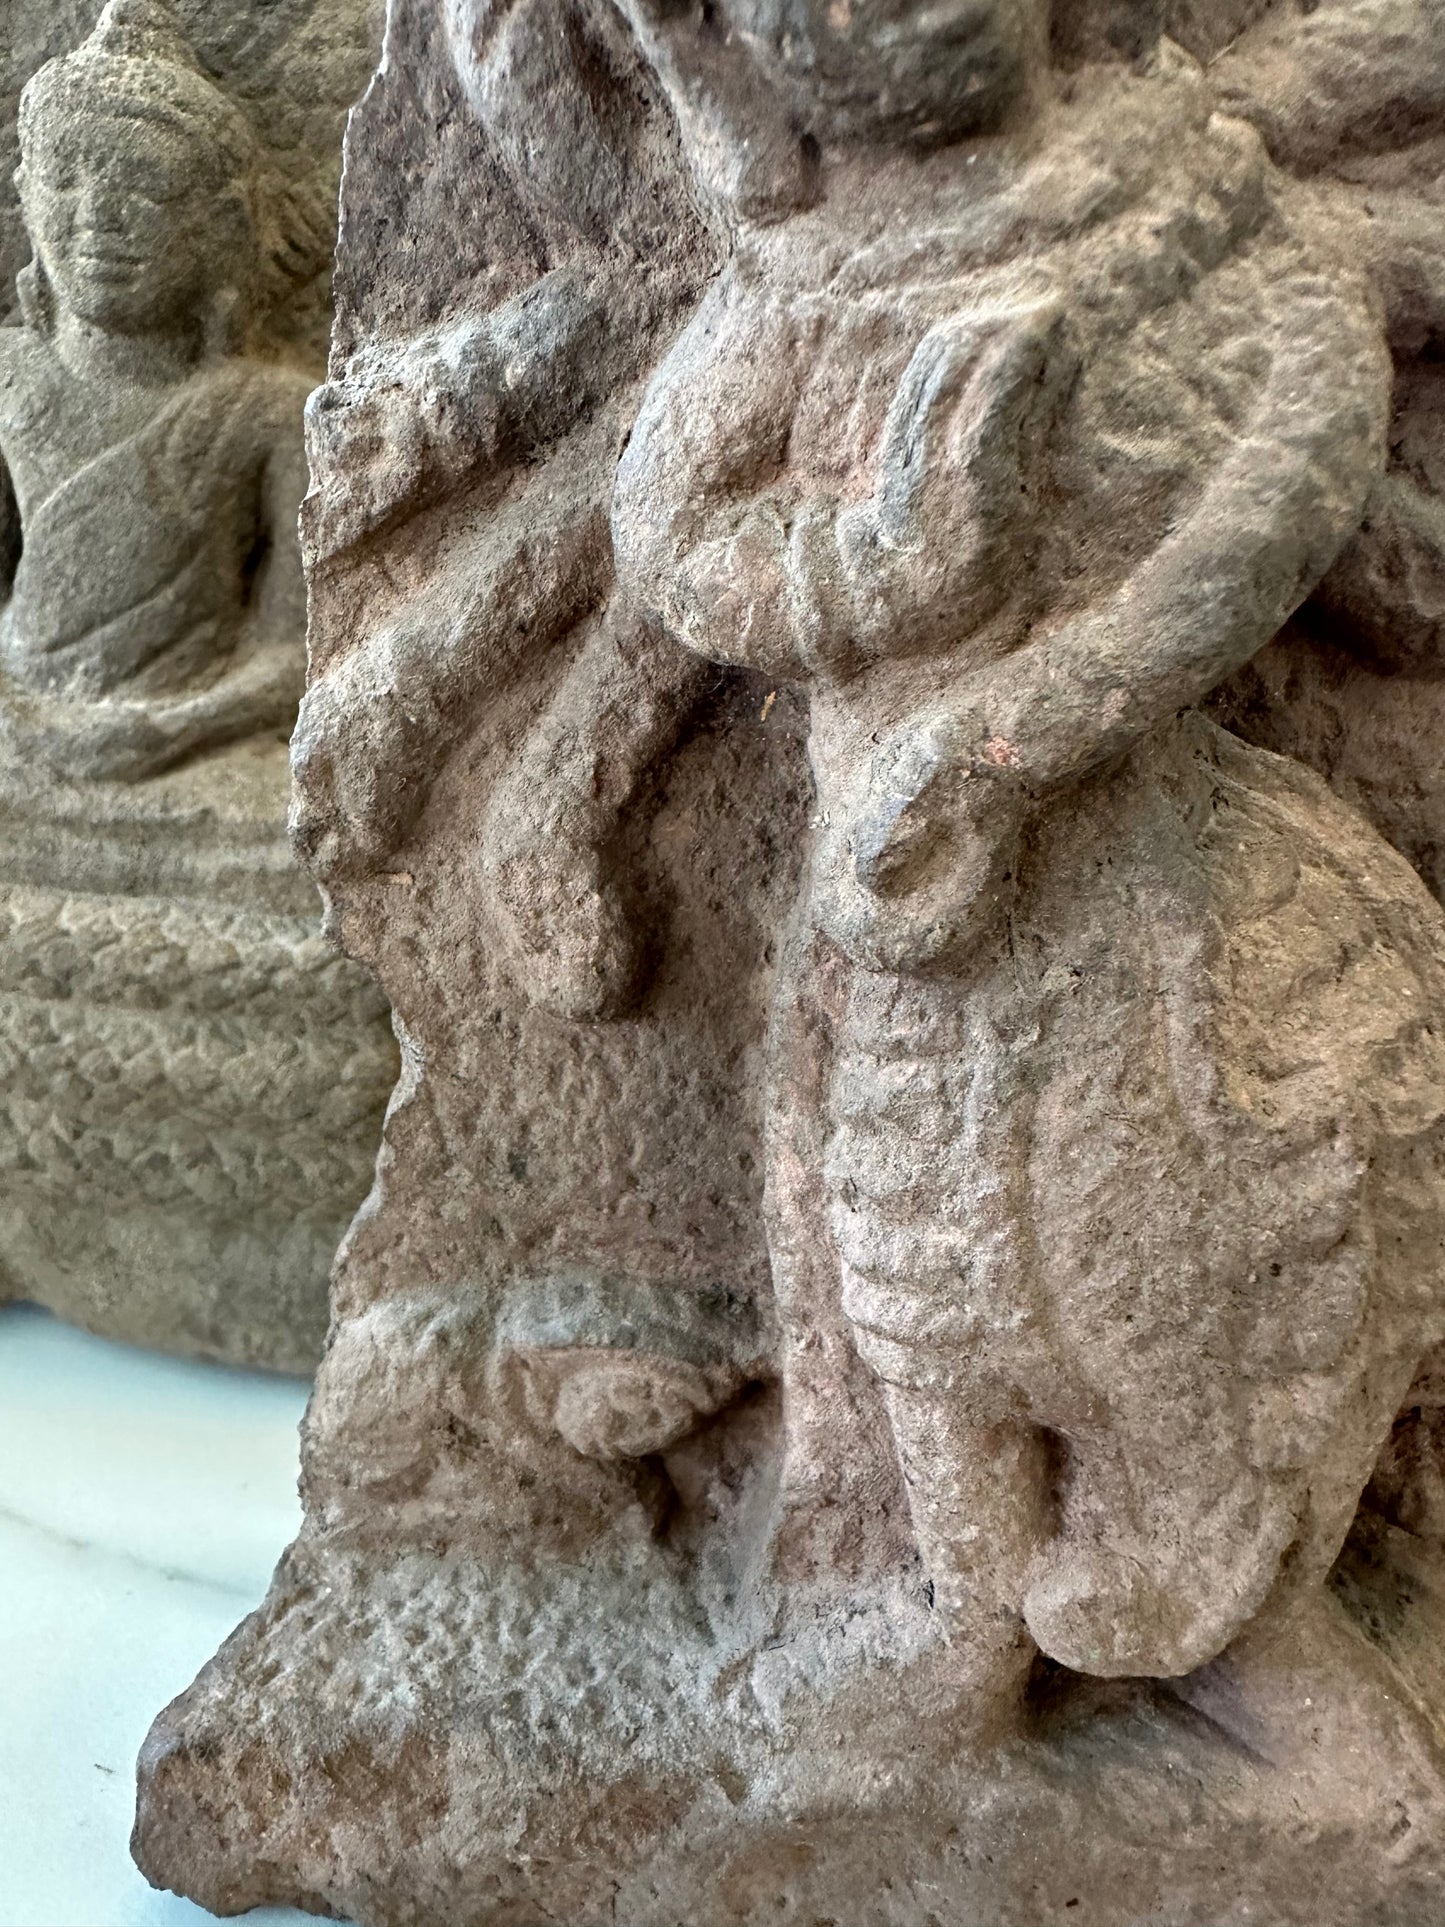 Antique stone statue of Godess Durga - circa 15th century-17th century #Durga - DharBazaar